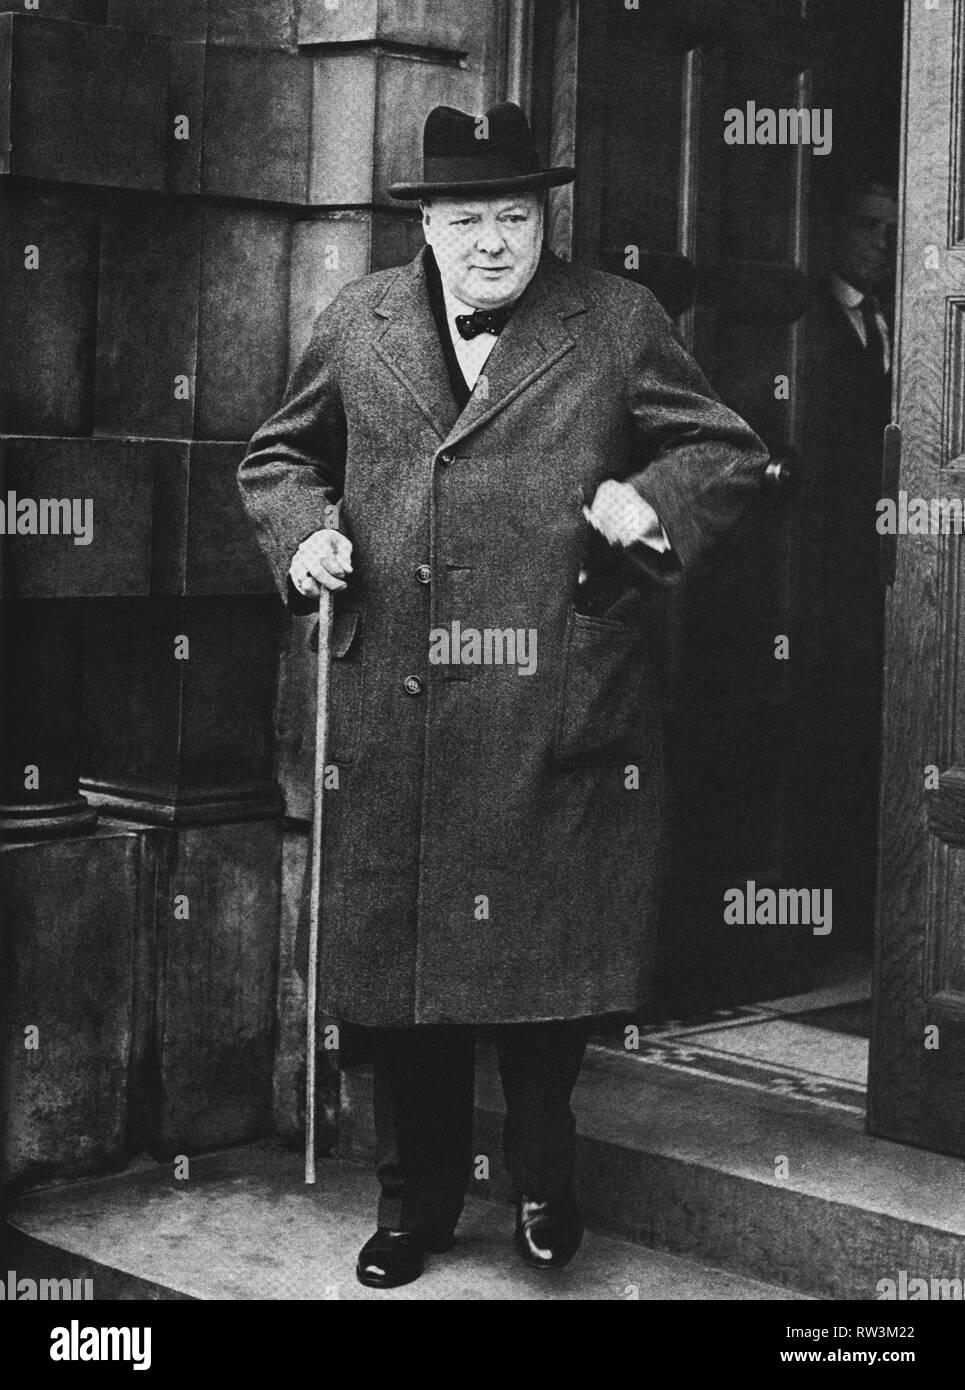 Winston Churchill lasciando l'Ammiragliato, 4 Aprile 1940 Foto Stock